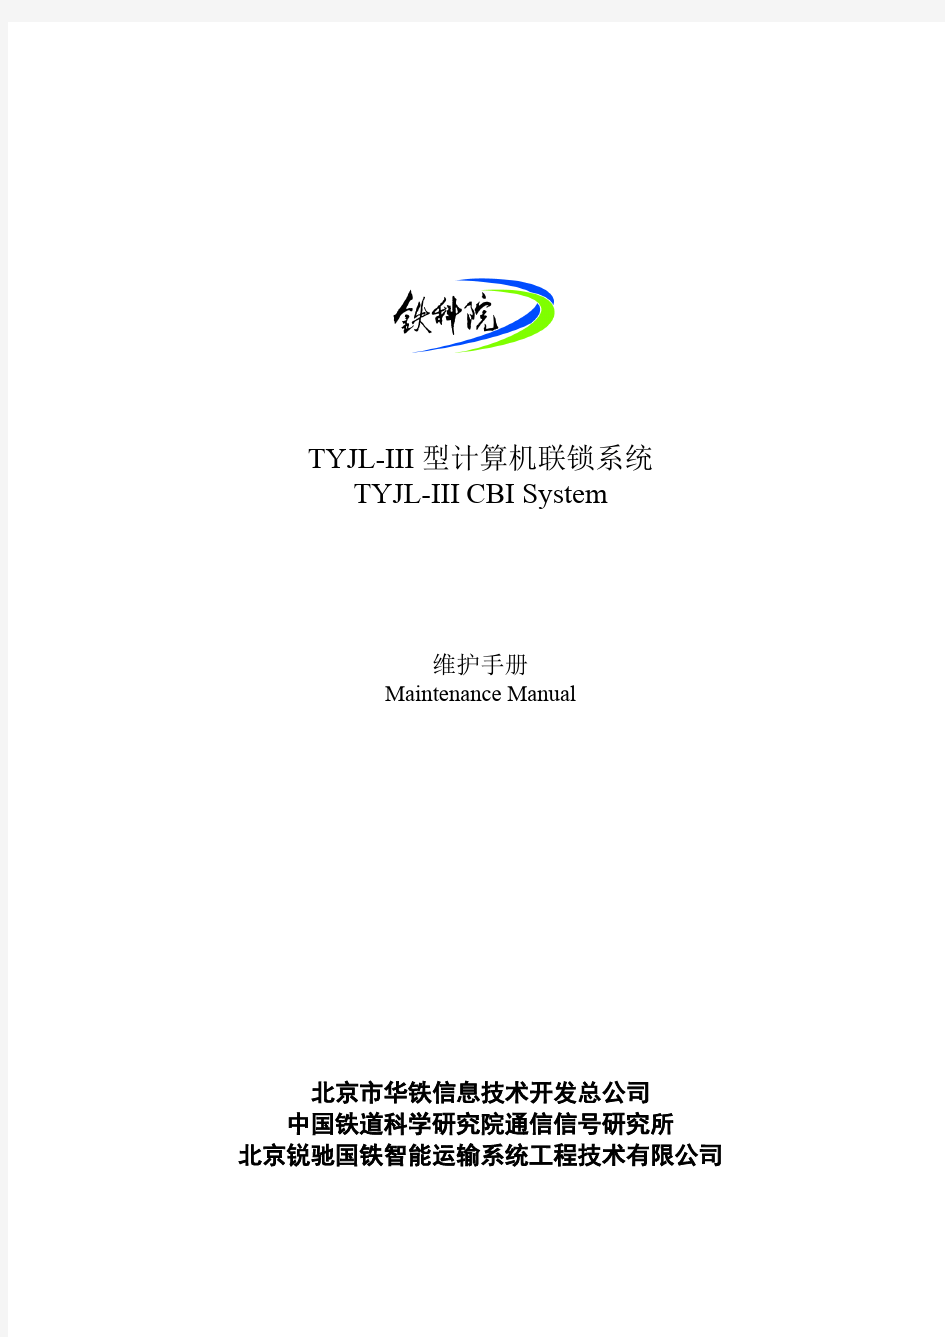 TYJL-III型计算机联锁系统-维护手册